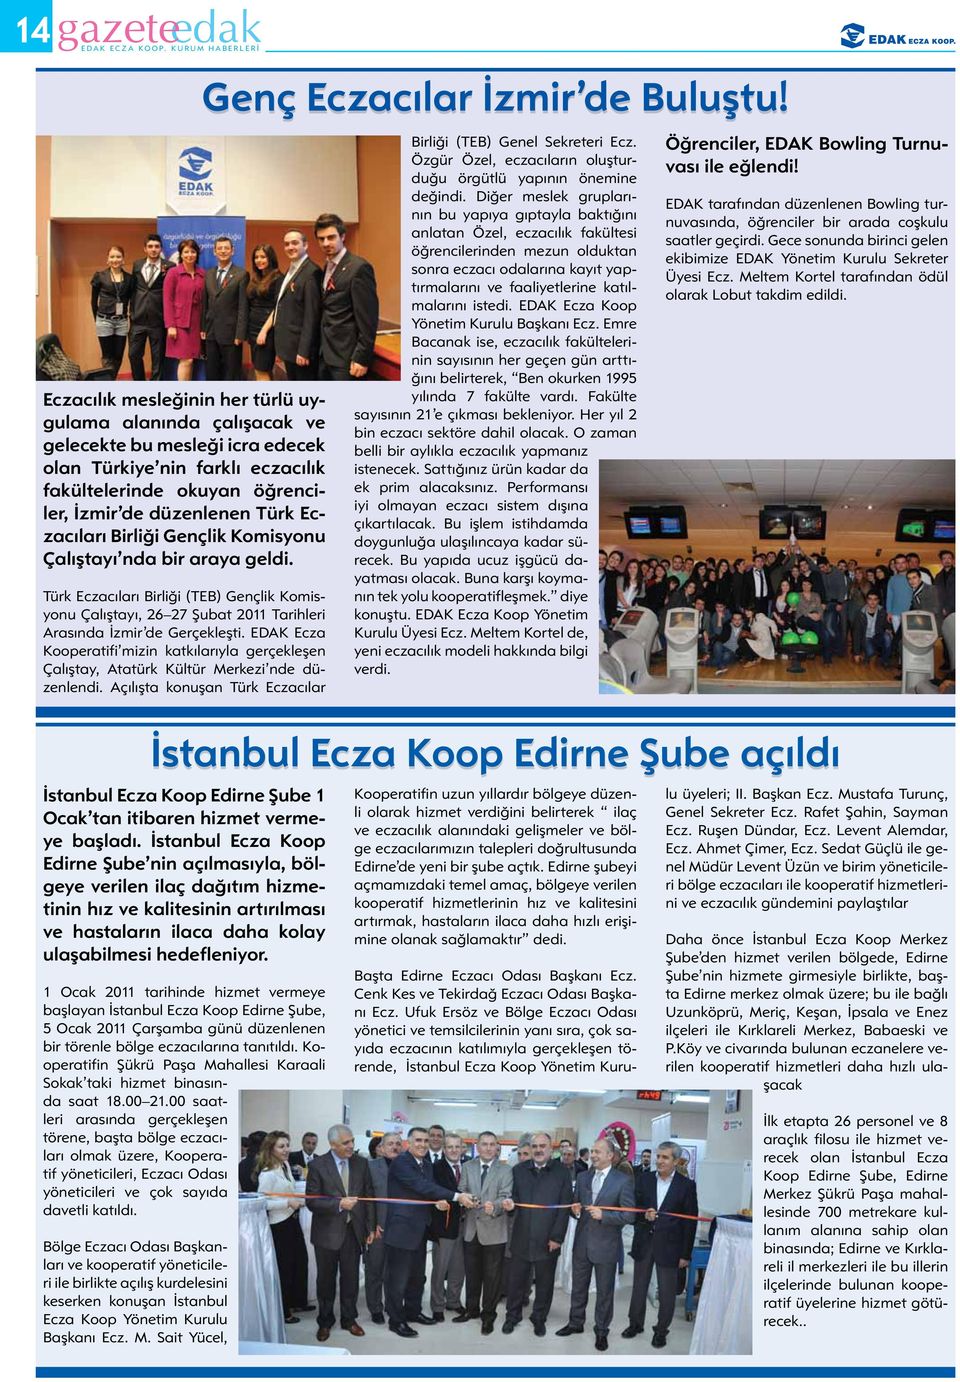 EDAK Ecza Kooperatifi mizin katkılarıyla gerçekleşen Çalıştay, Atatürk Kültür Merkezi nde düzenlendi.